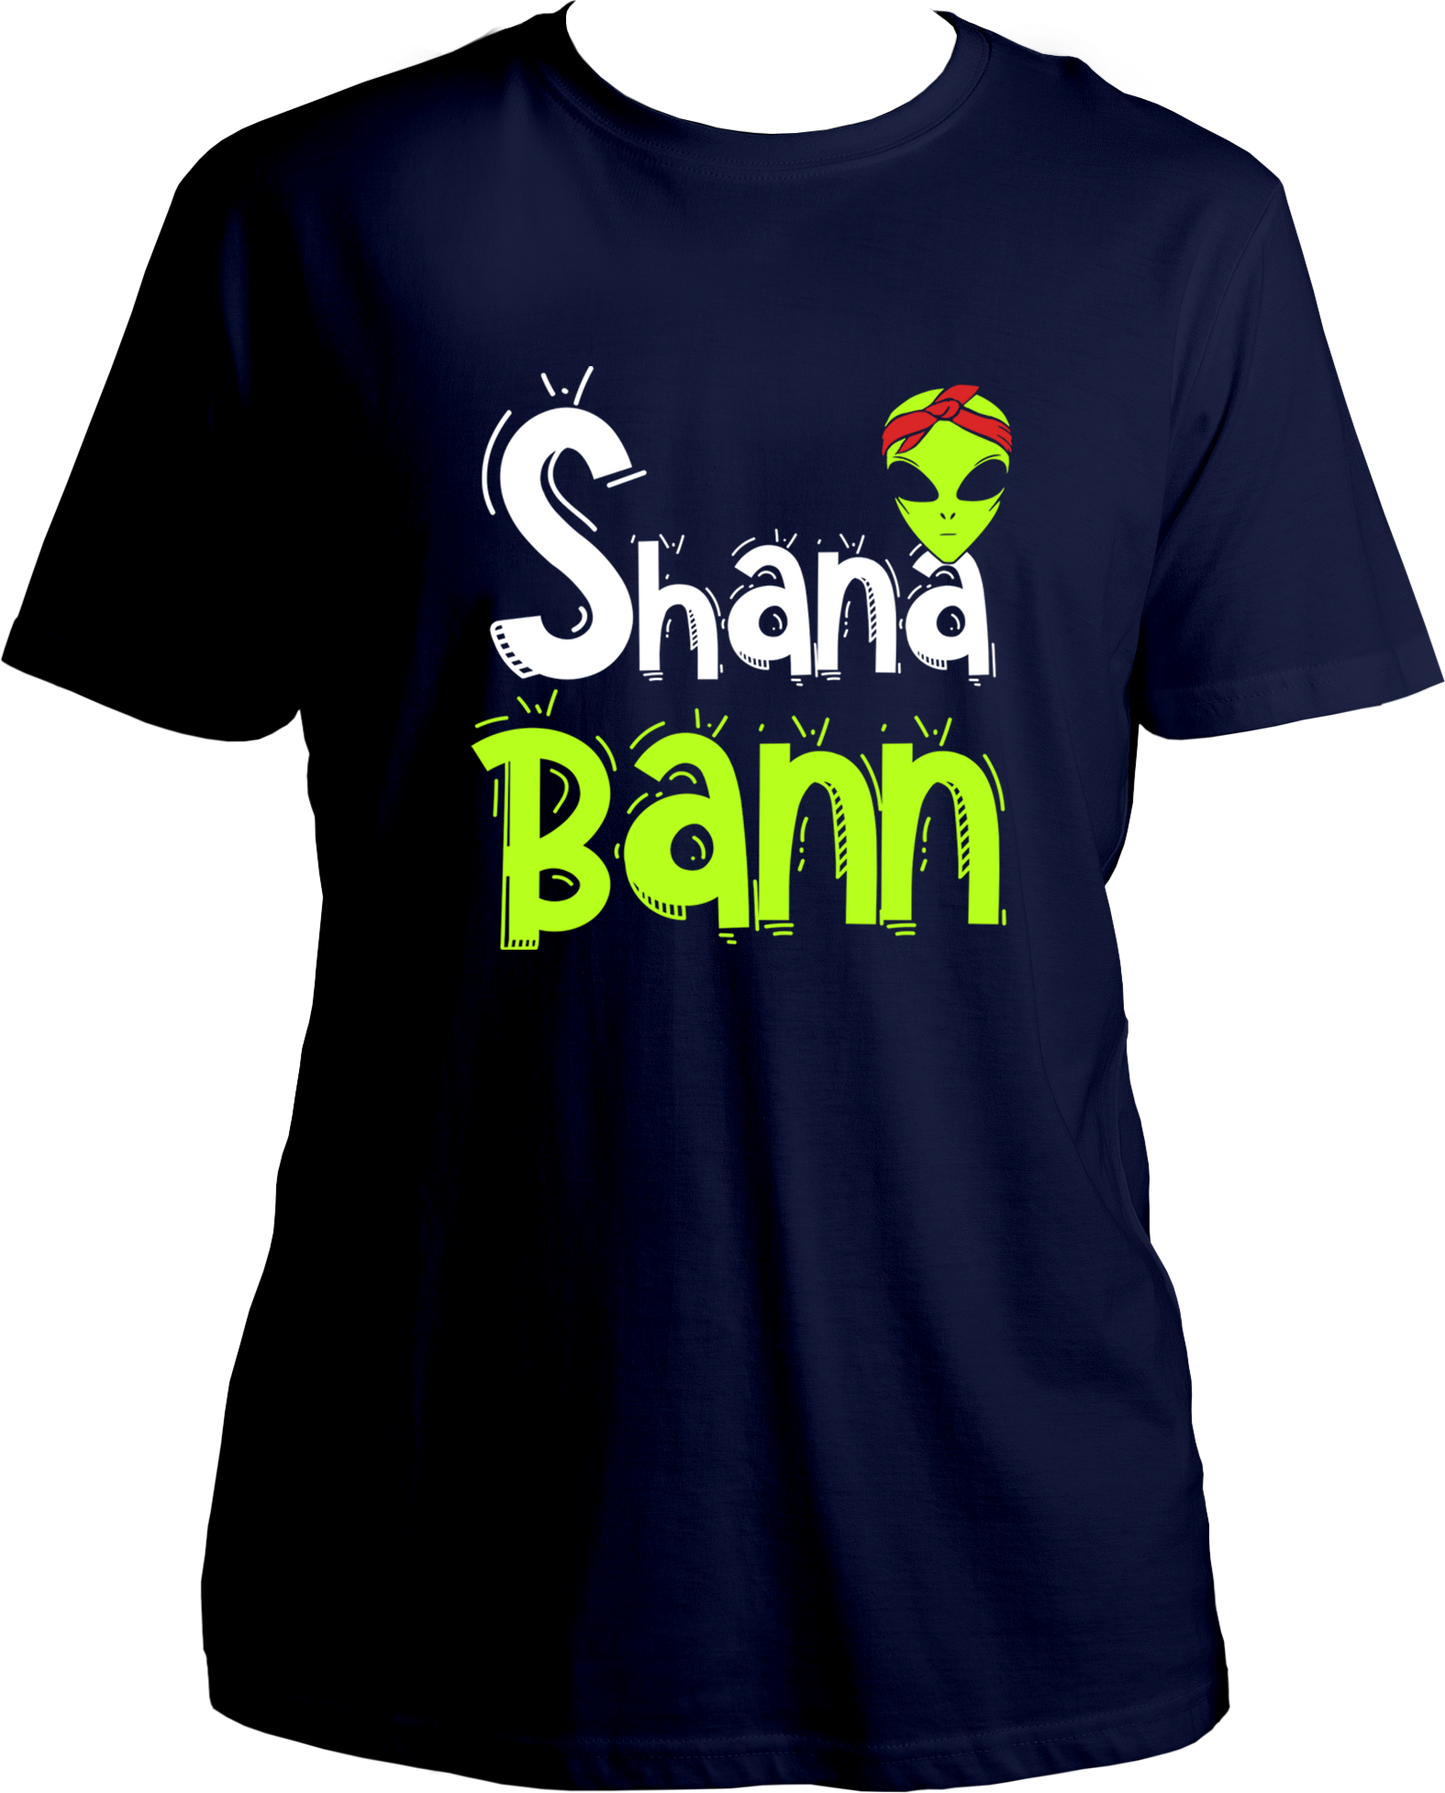 MC-Stan-Shana-Bann-nike-lean-T-shirt